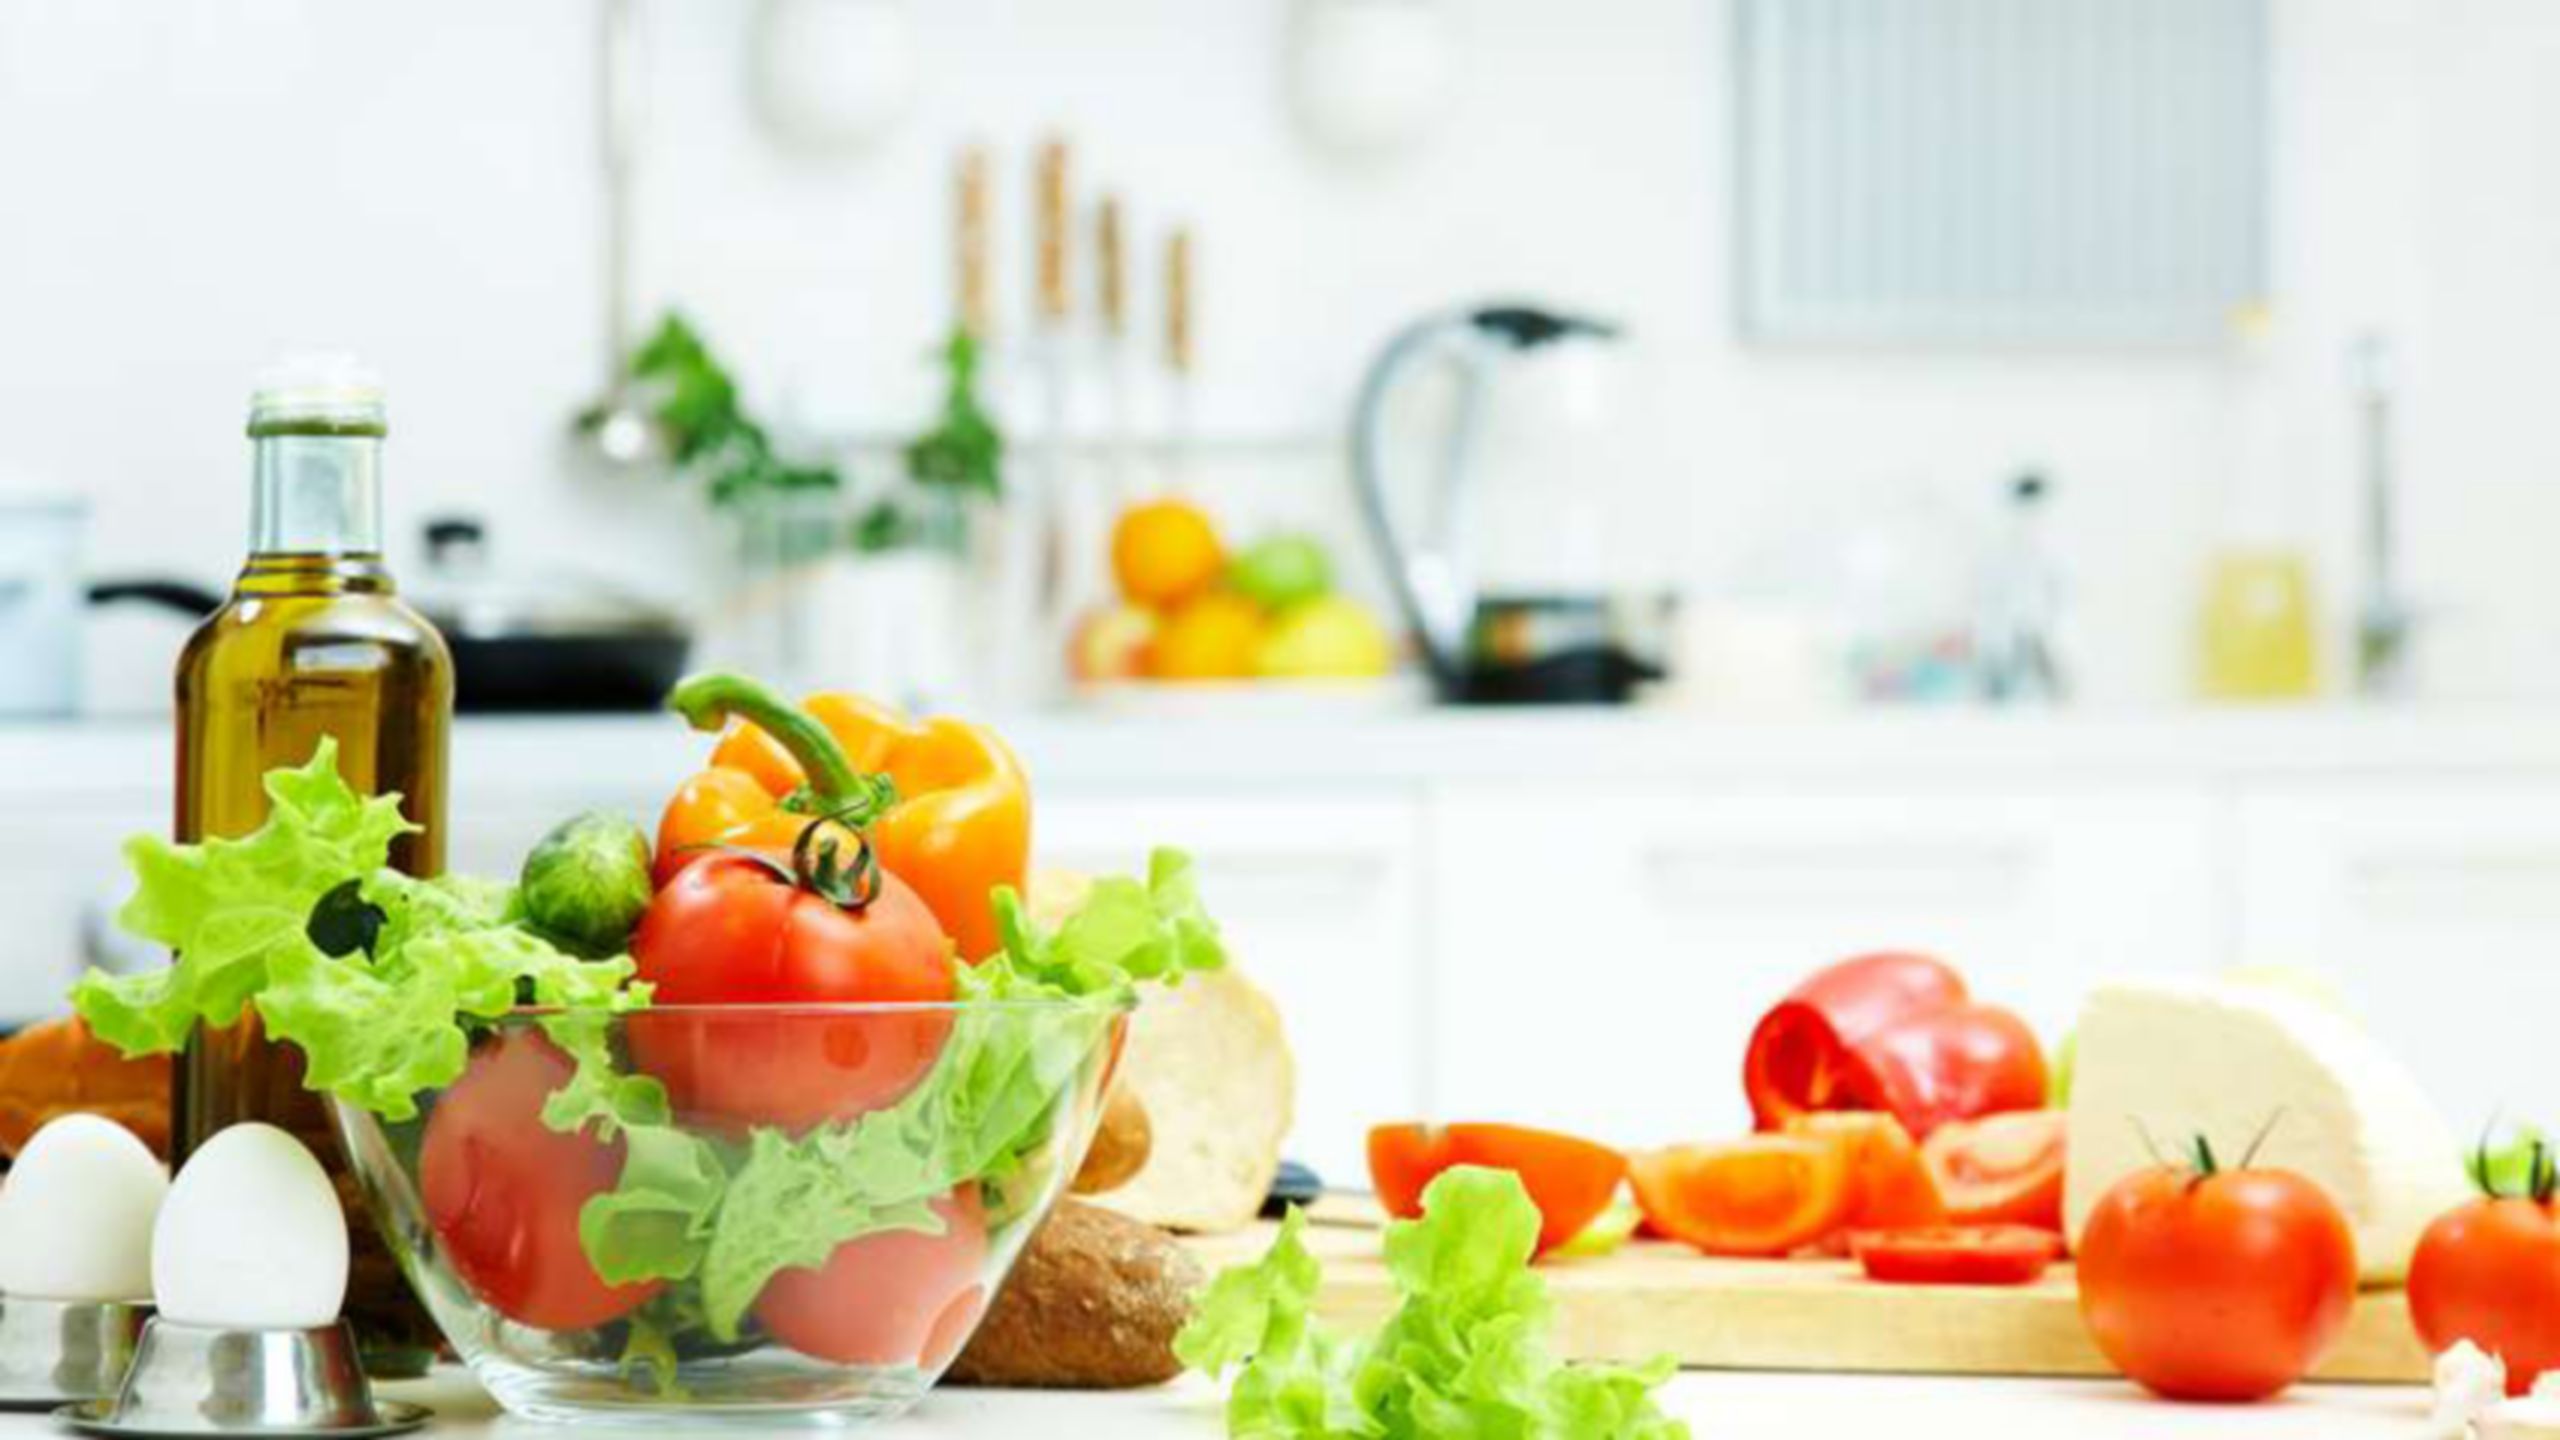 Ingredienti per creare un’insalata con pomodori, lattuga e uova sul ripiano di una cucina